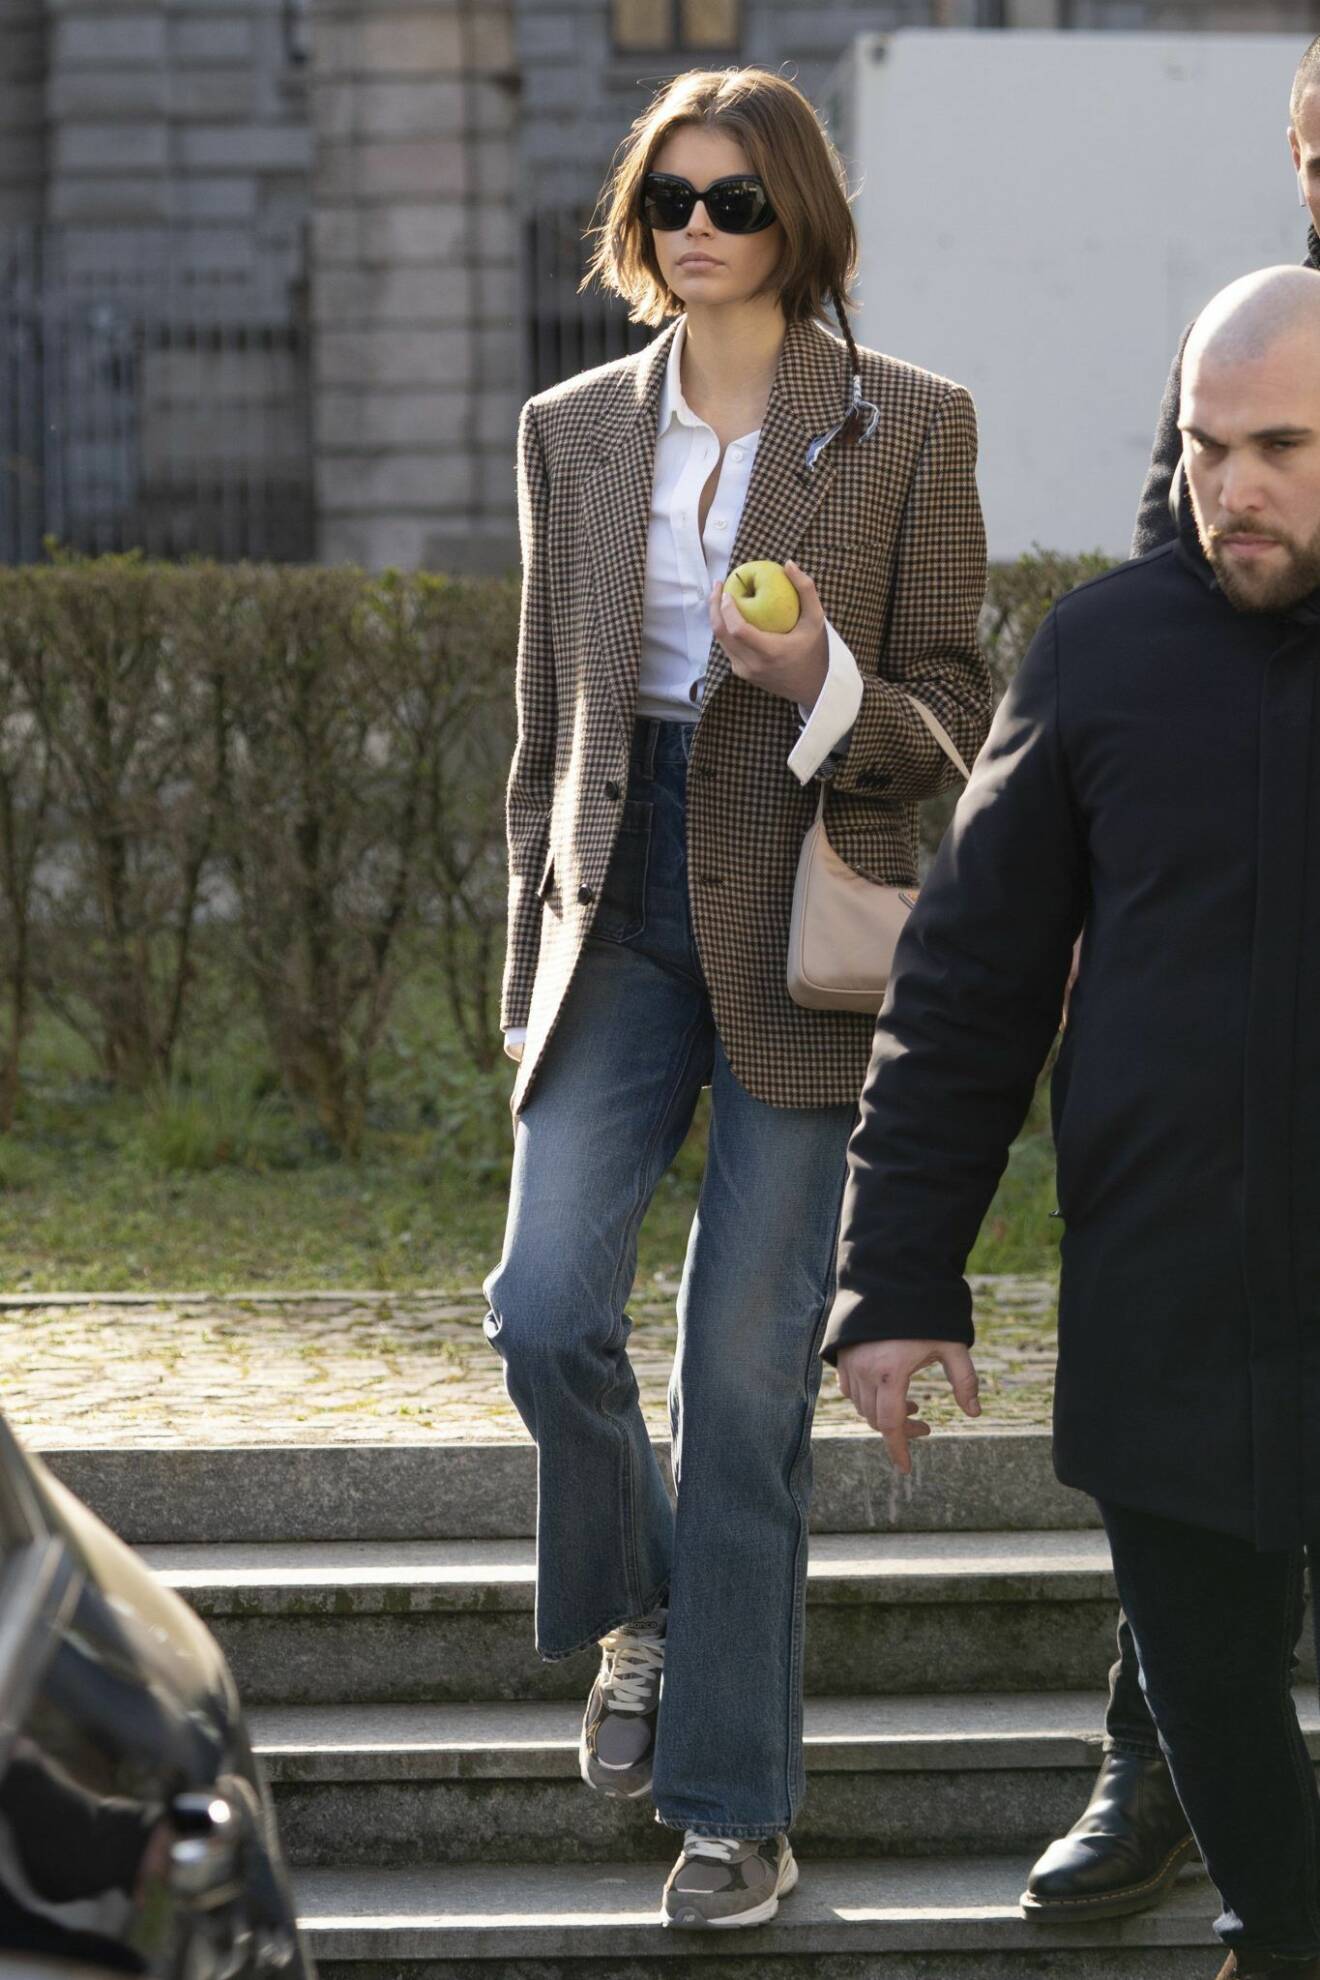 Sno stilinspiration från supermodellen Kaia Gerber bär en avslappnad jeanslook.